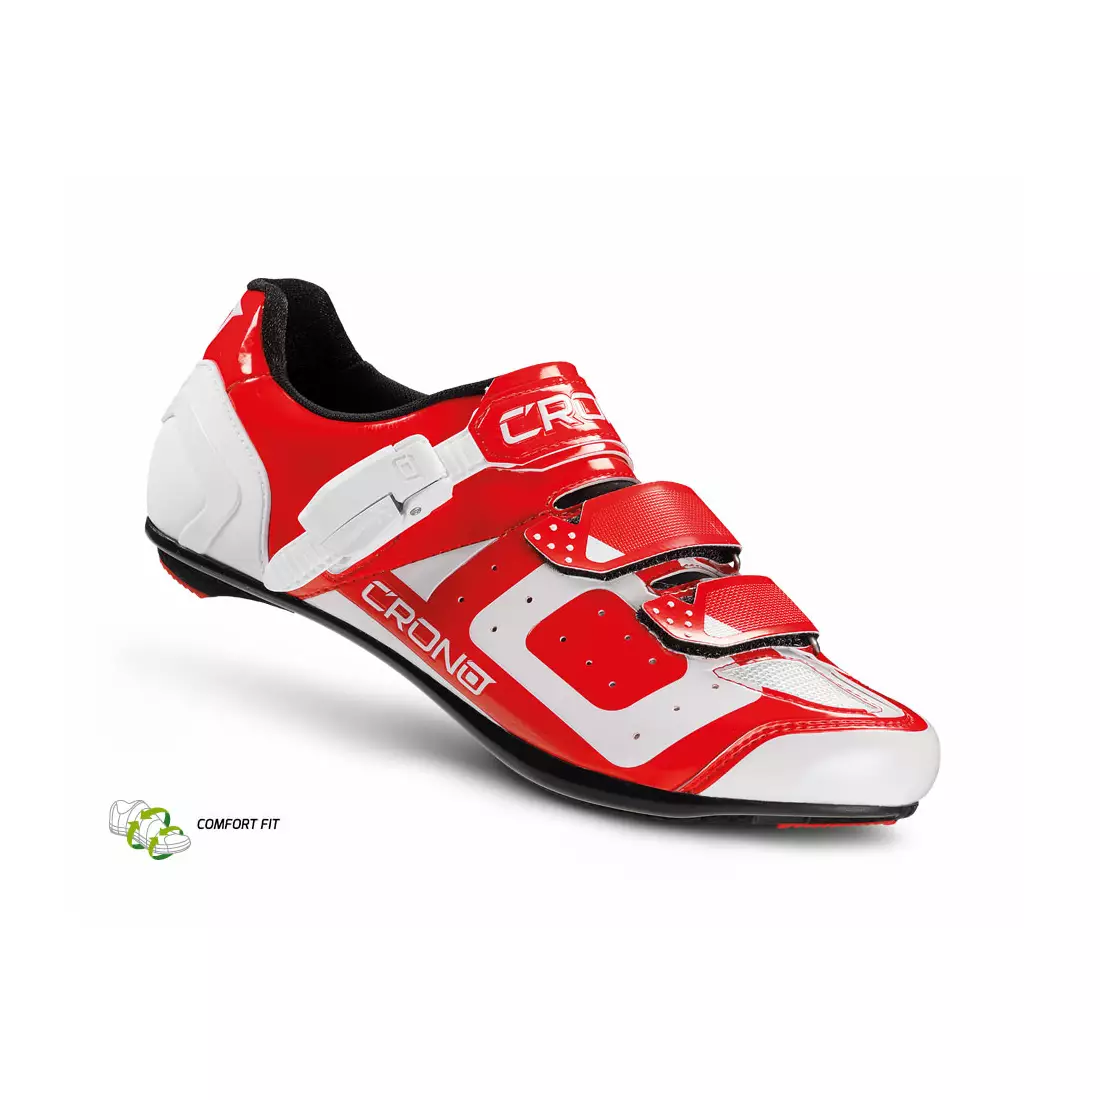 CRONO CR3 nylon - silniční cyklistická obuv, Červené